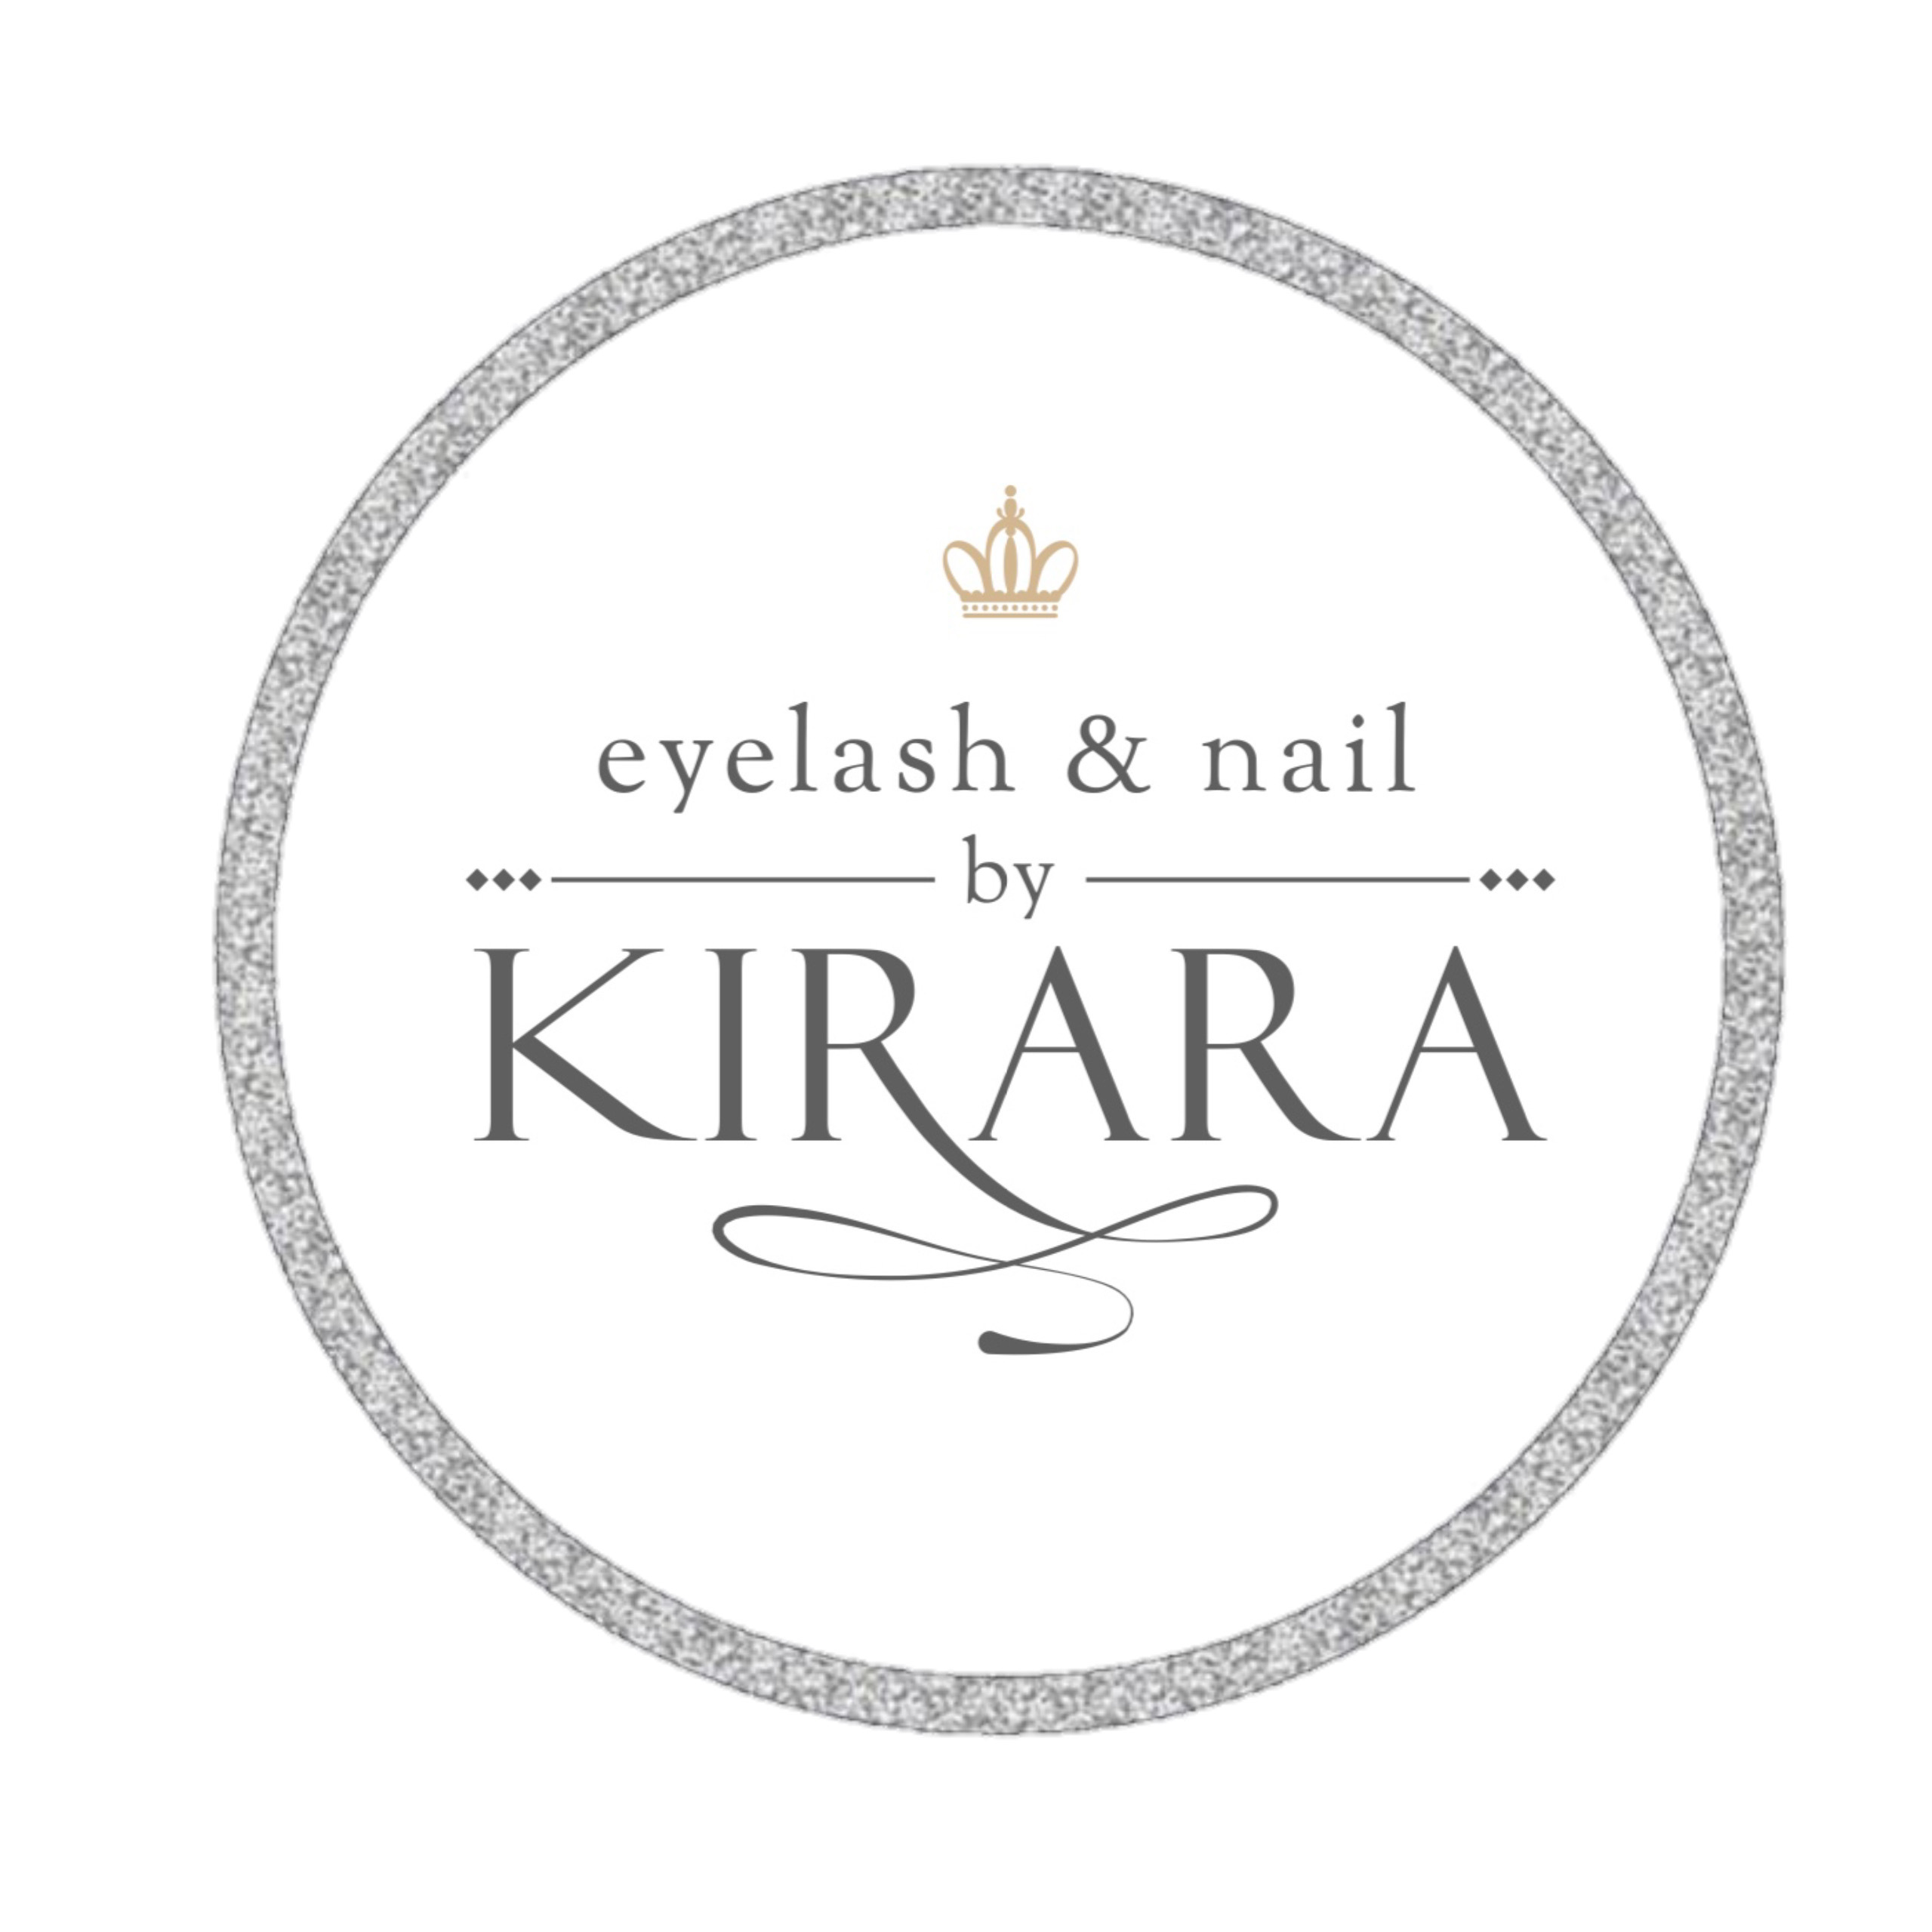 eyelash&nail by KIRARA